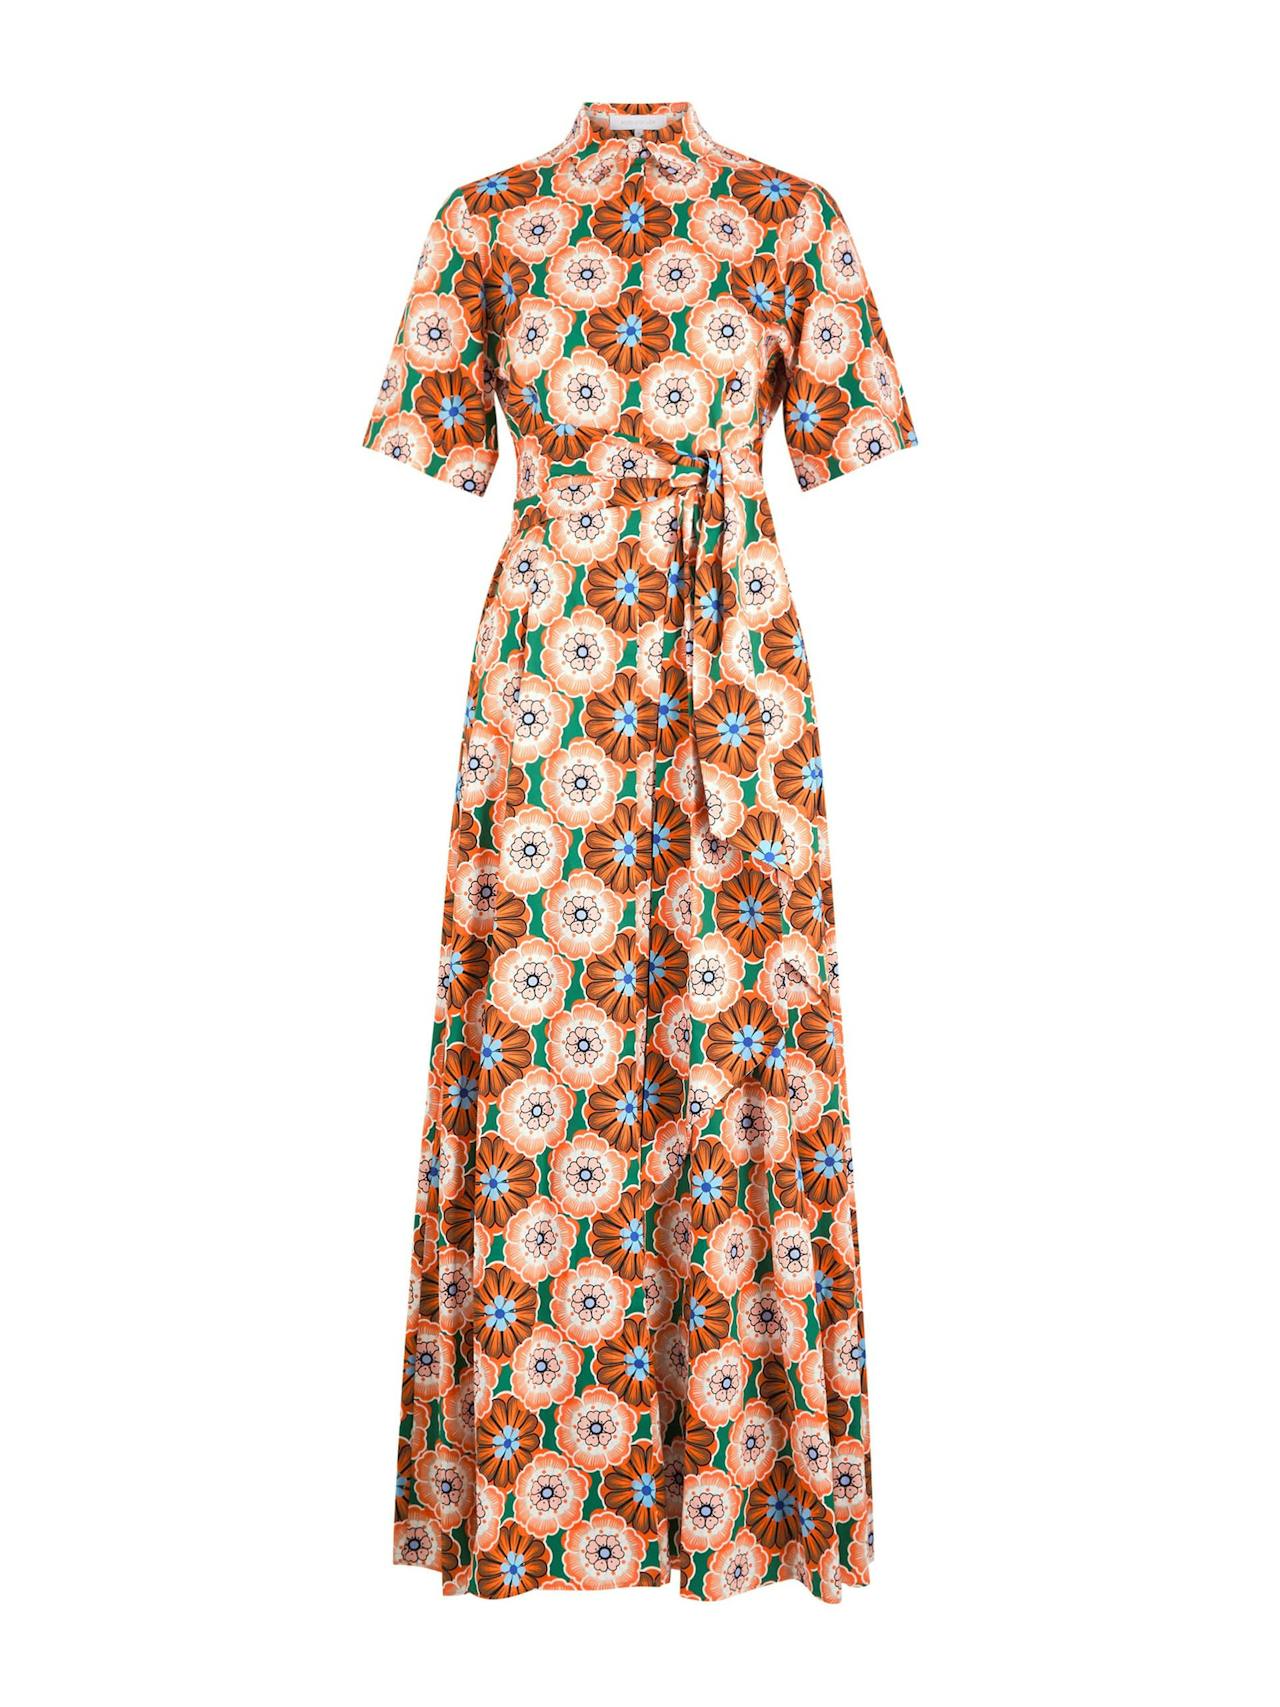 Flower pop orange Posie cotton maxi dress